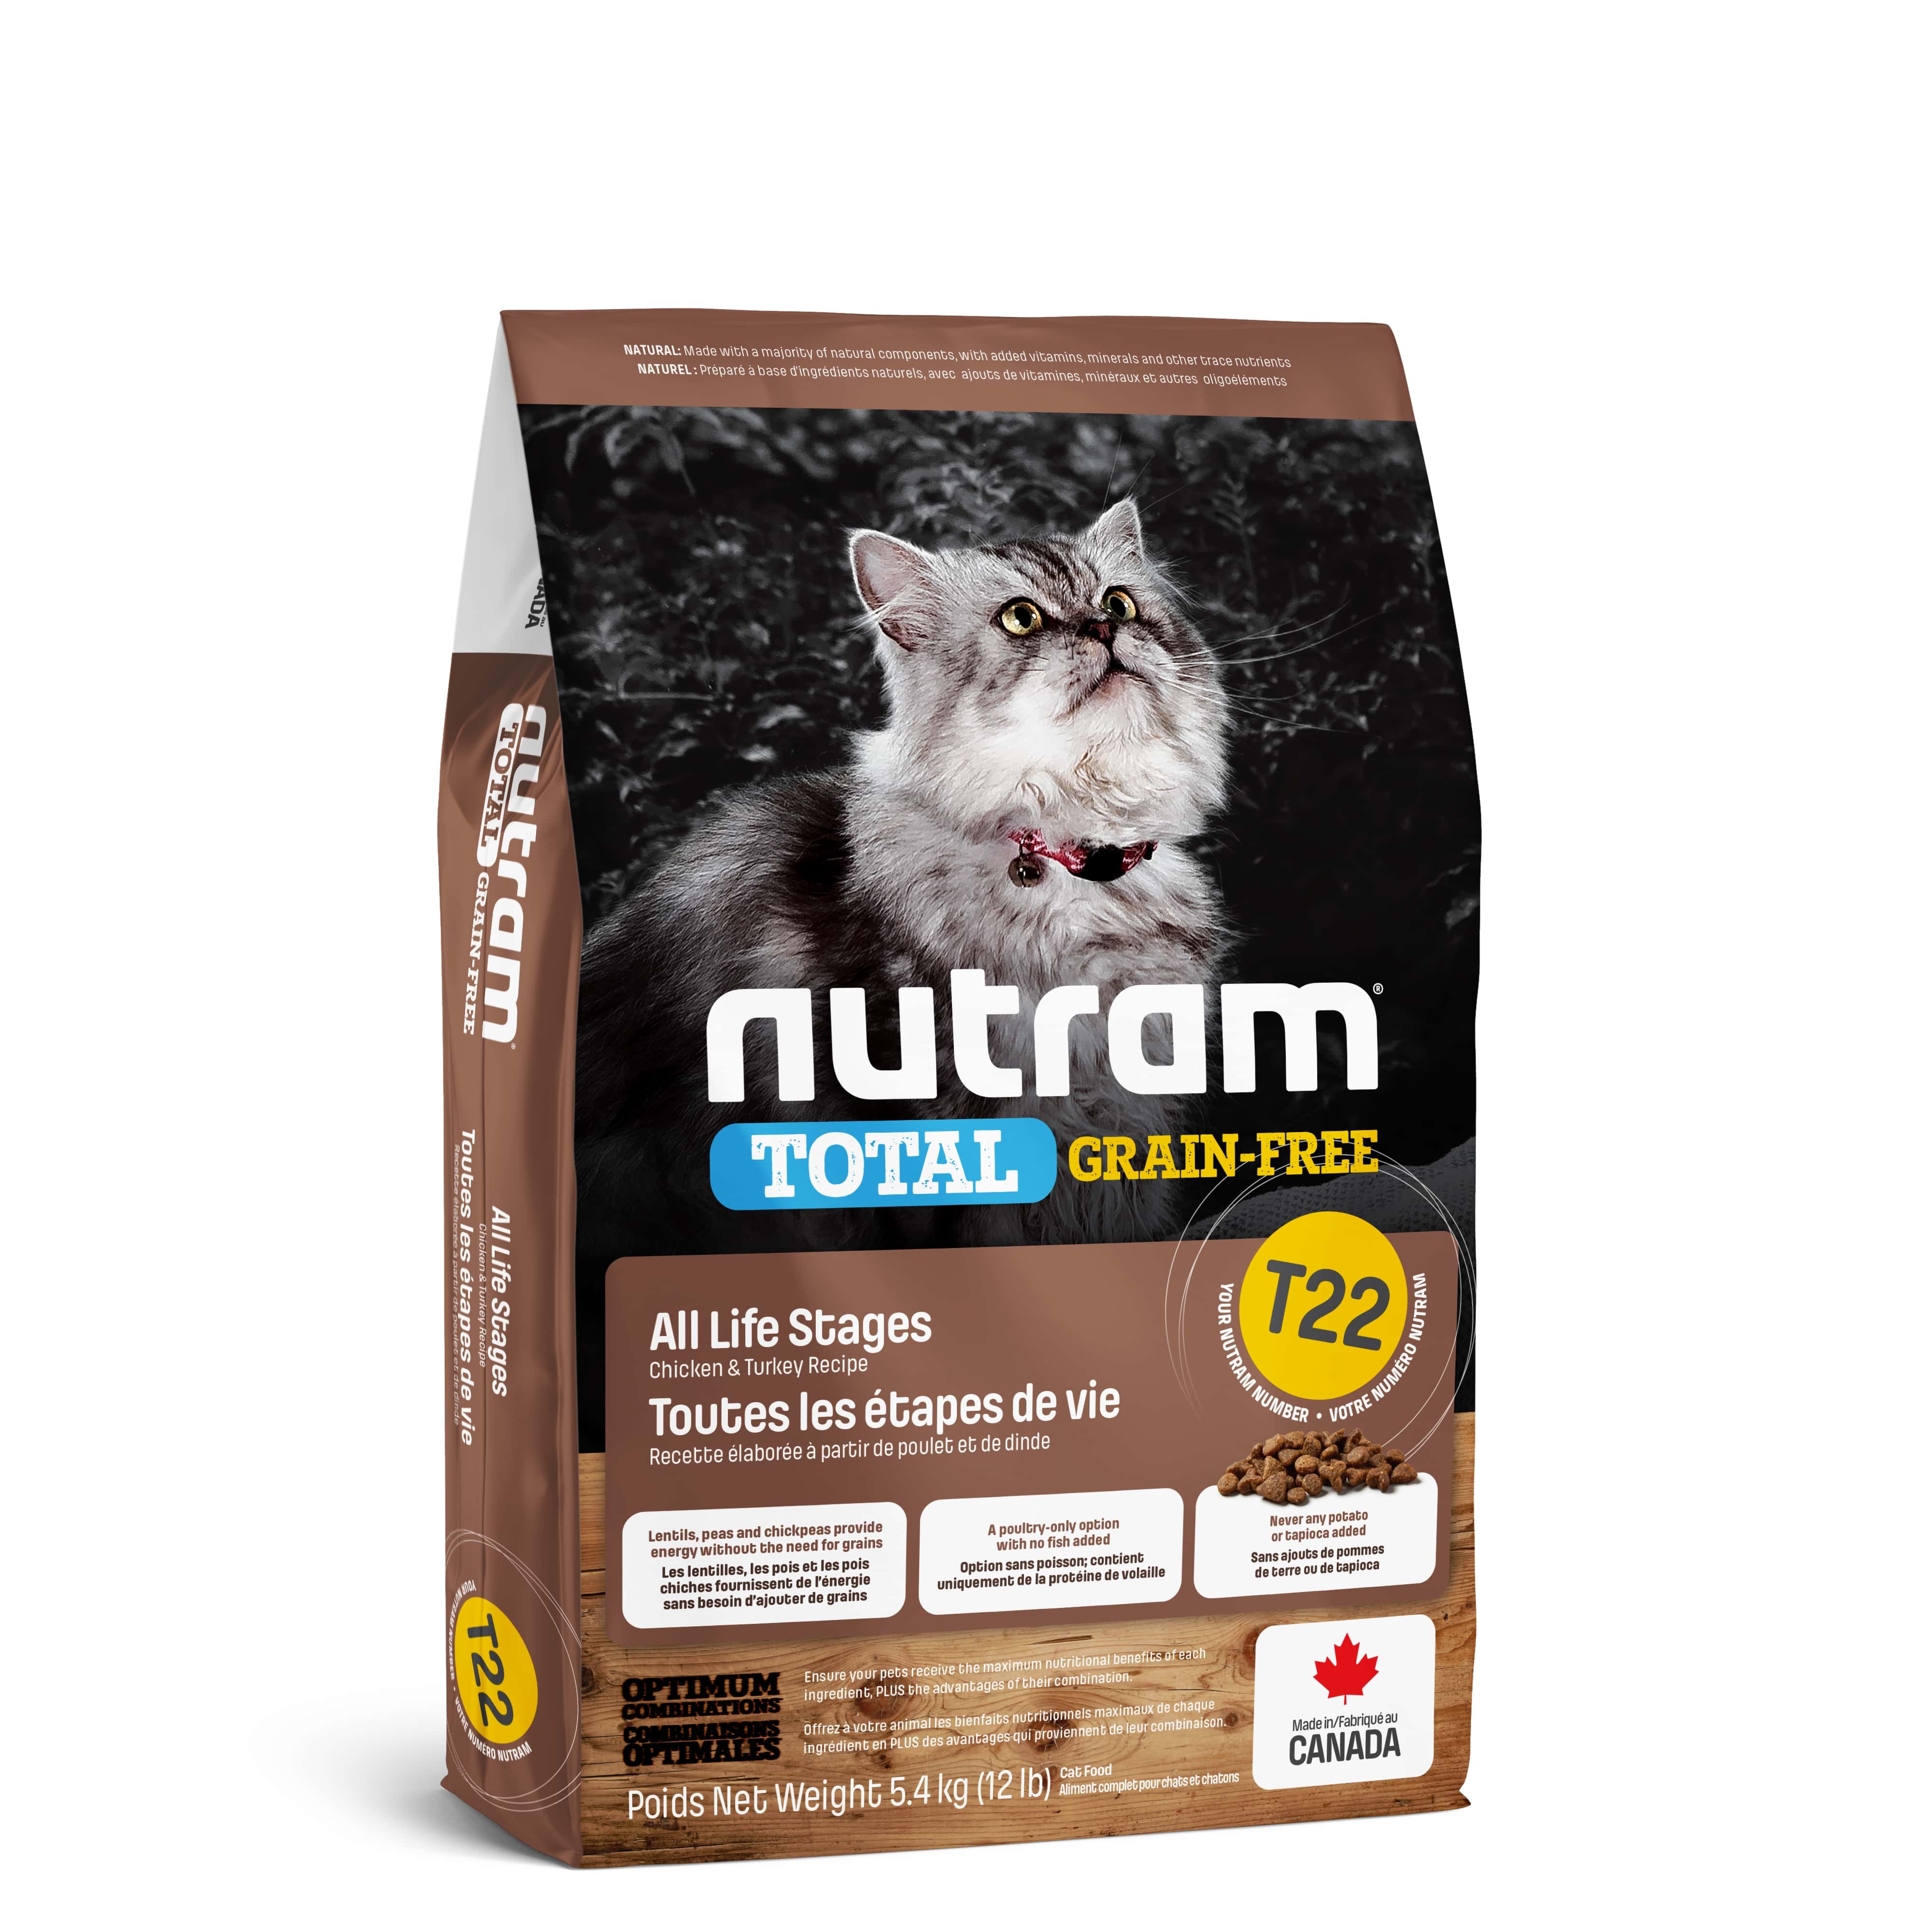 T22 Nutram Total Grain-Free® Turkey & Chiken Cat Food